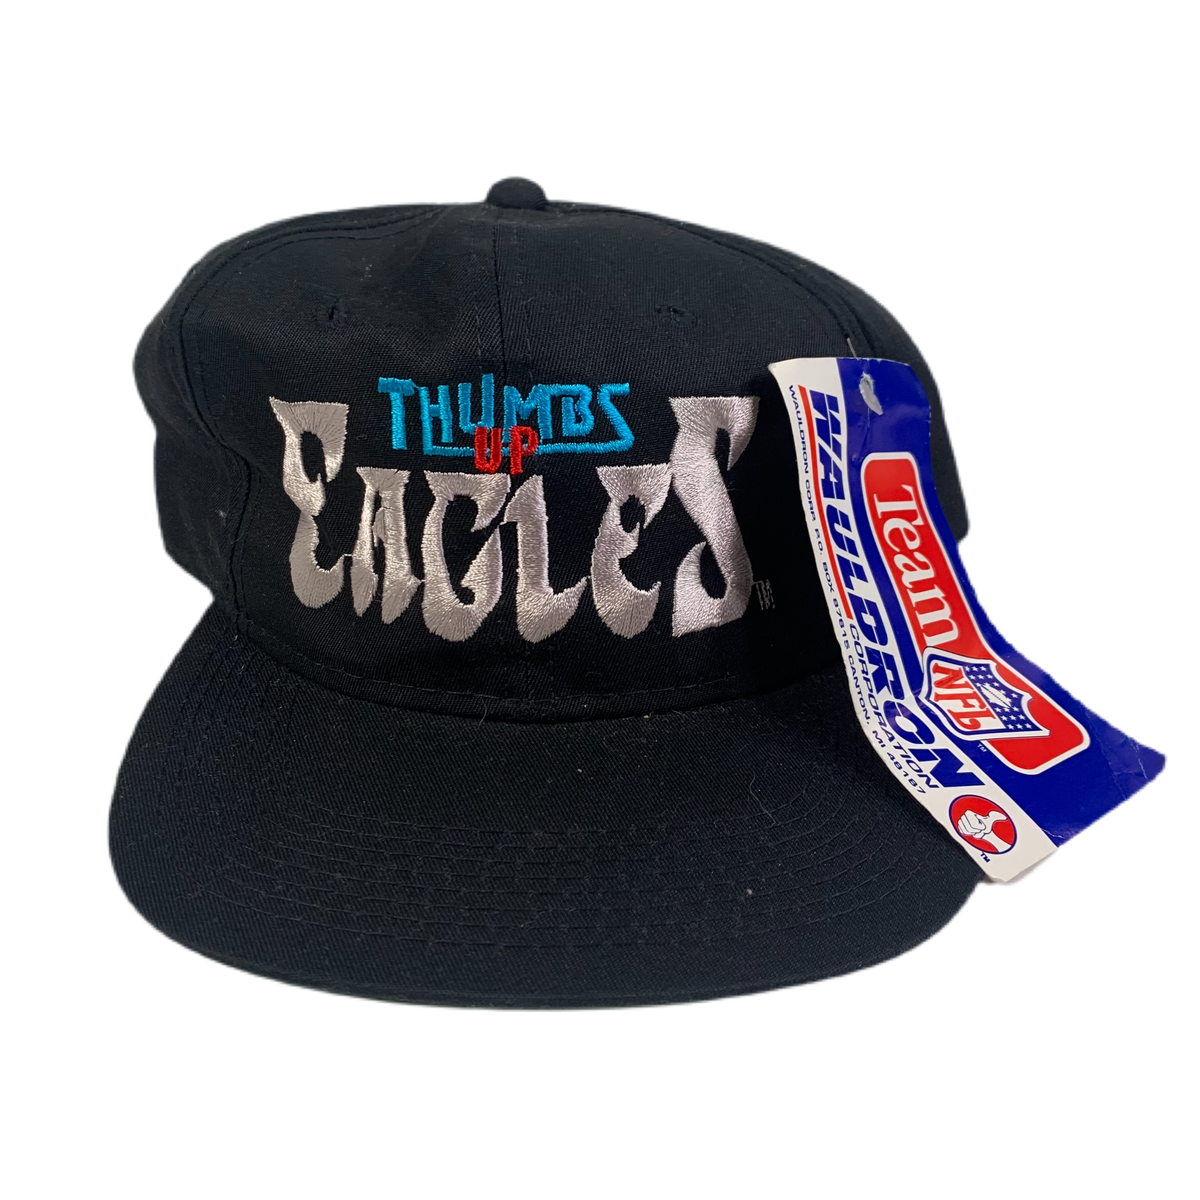 Vintage Philadelphia Eagles &quot;Thumbs Up!&quot; Hat